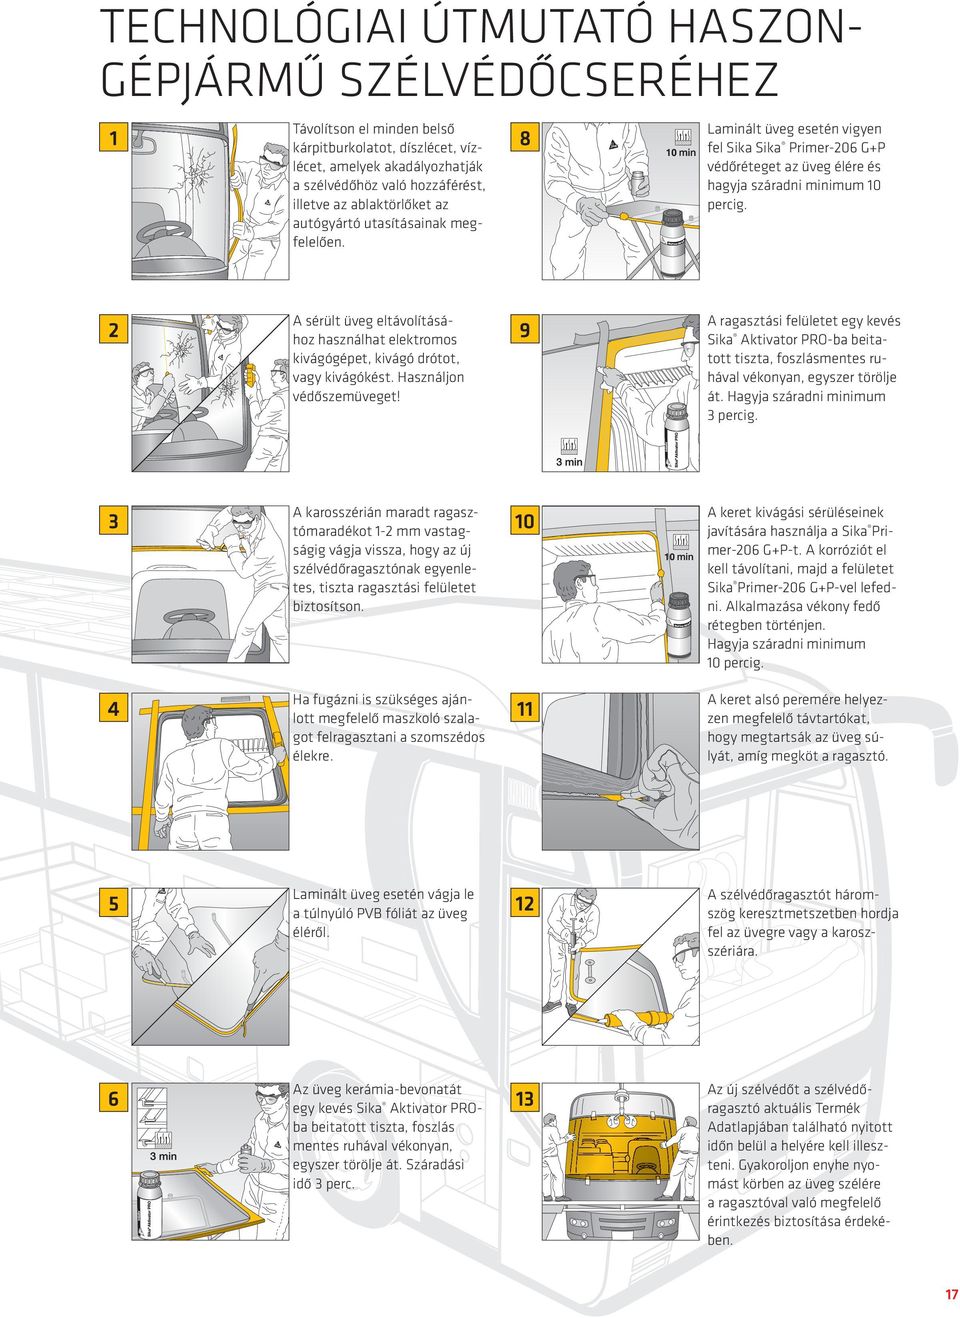 2 A sérült üveg eltávolításához használhat elektromos kivágógépet, kivágó drótot, vagy kivágókést. Használjon védőszemüveget!